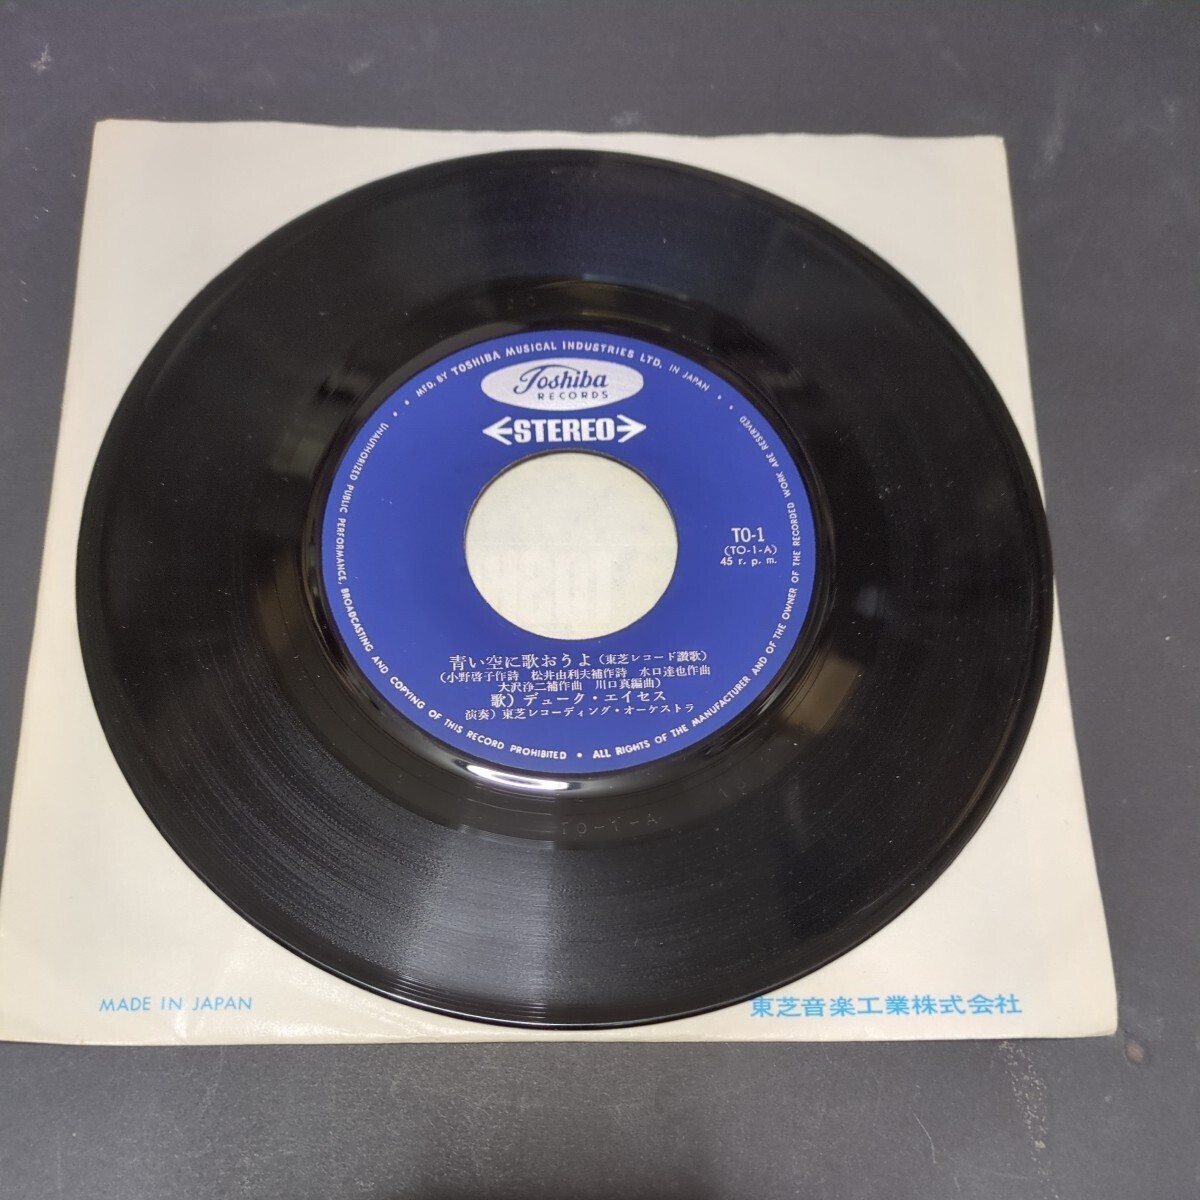 デューク・エイセス「青い空に歌おうよ 東芝レコード讃歌」 自主盤 B面は演奏 東芝レコード企業物 TO-1の画像3